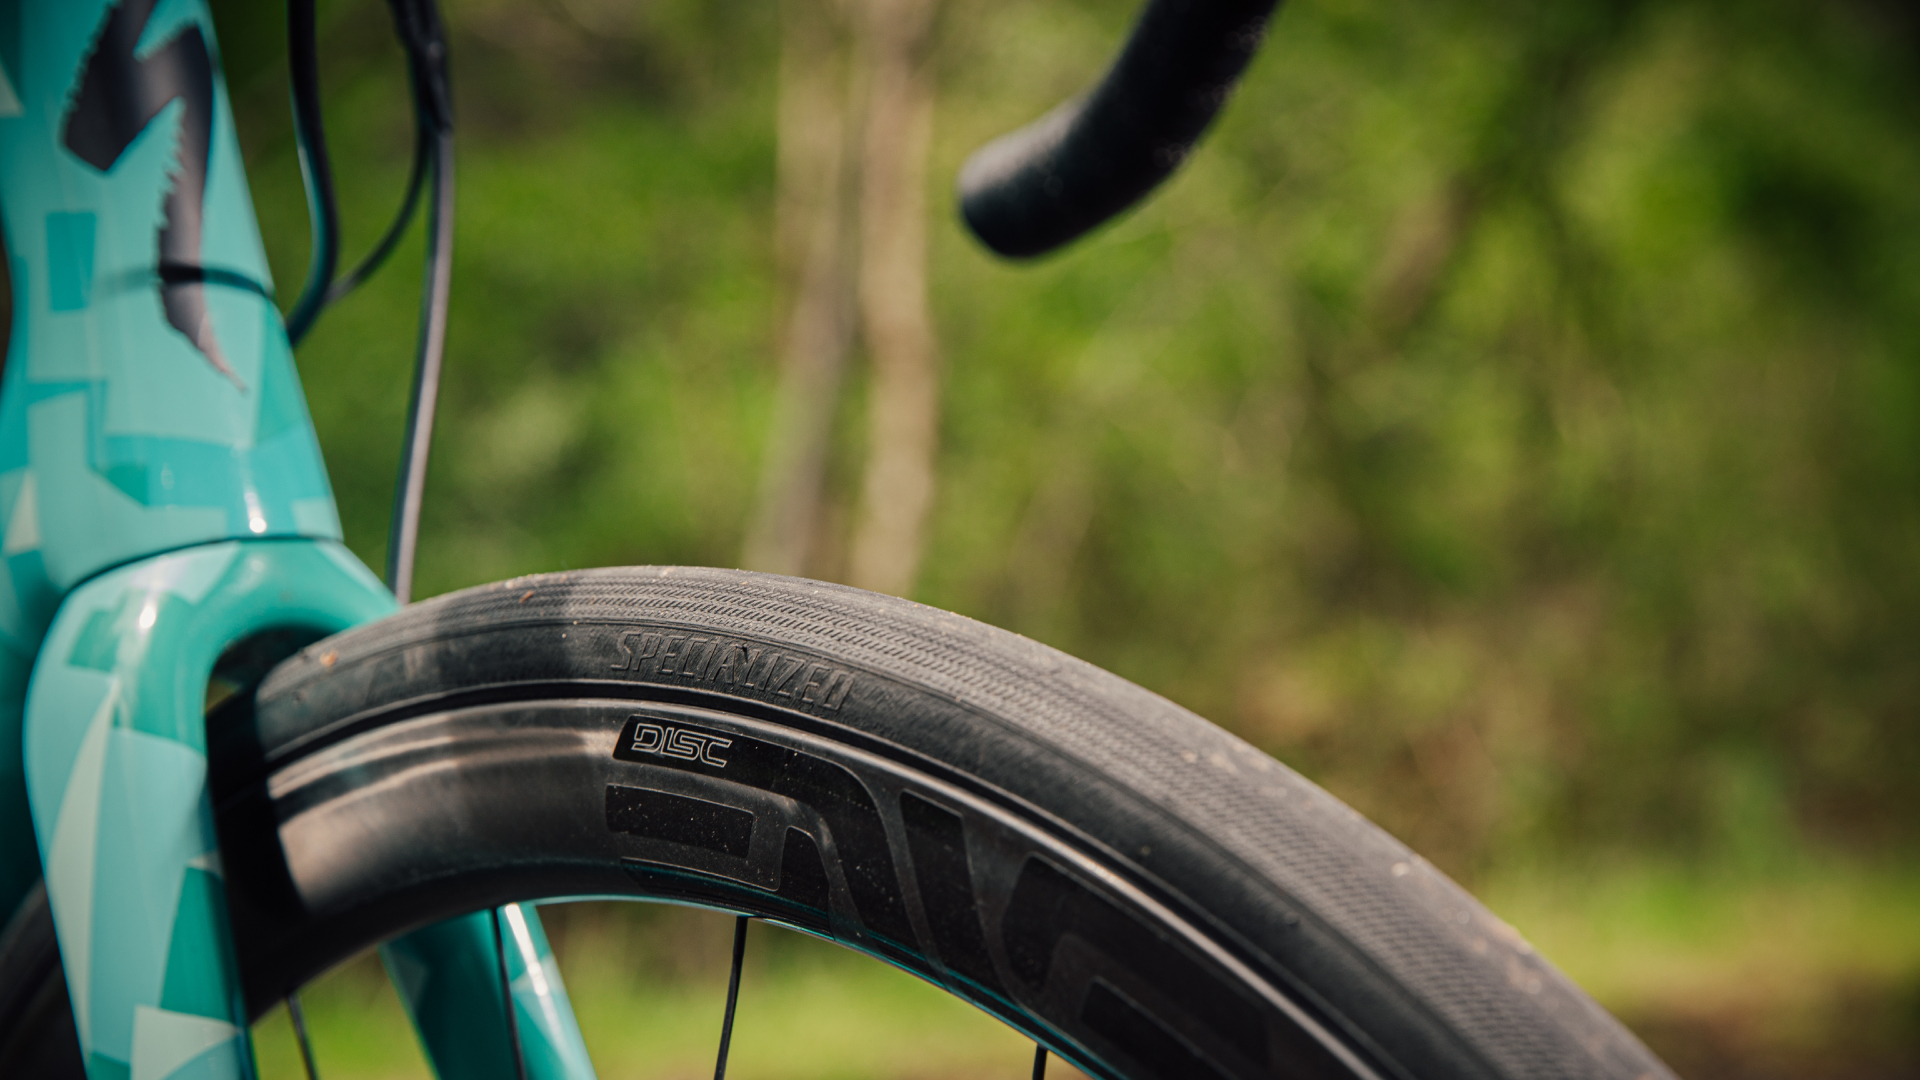 Tubeless Road Bike Tires: Racing High Pressure Bicycle Tires